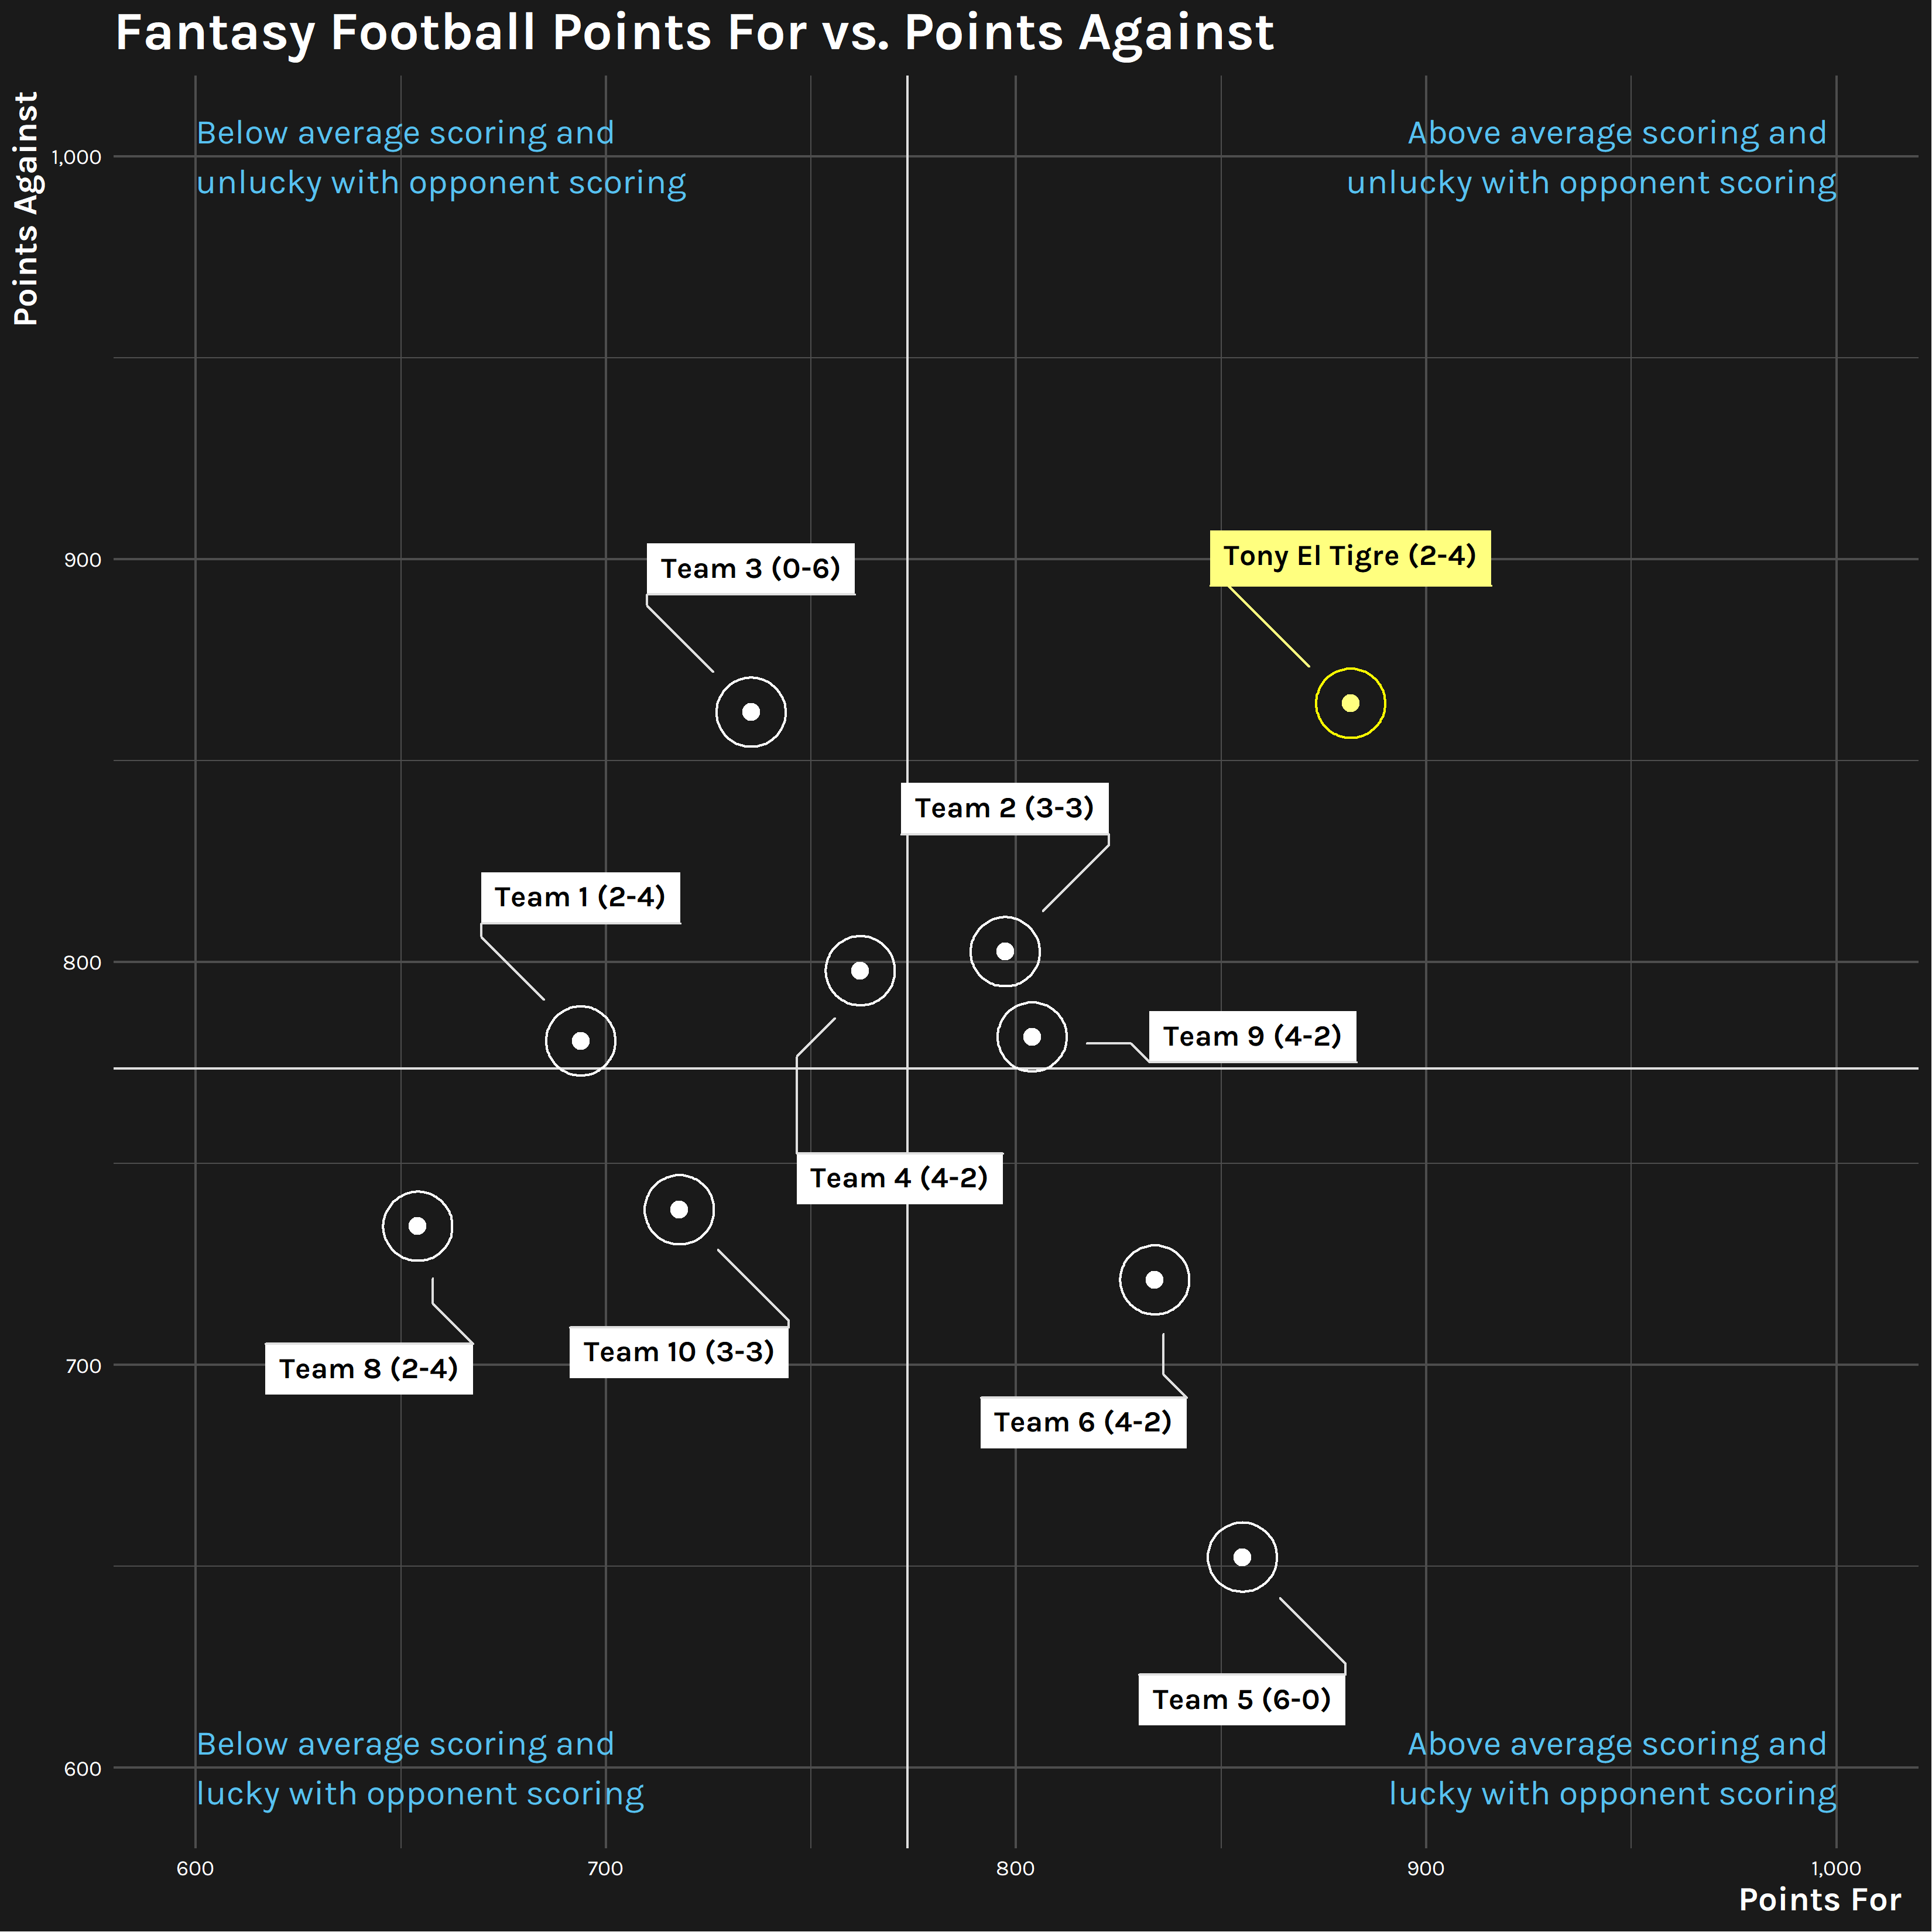 2020-21 Fantasy Football Points For vs. Points Against Scatter Plot